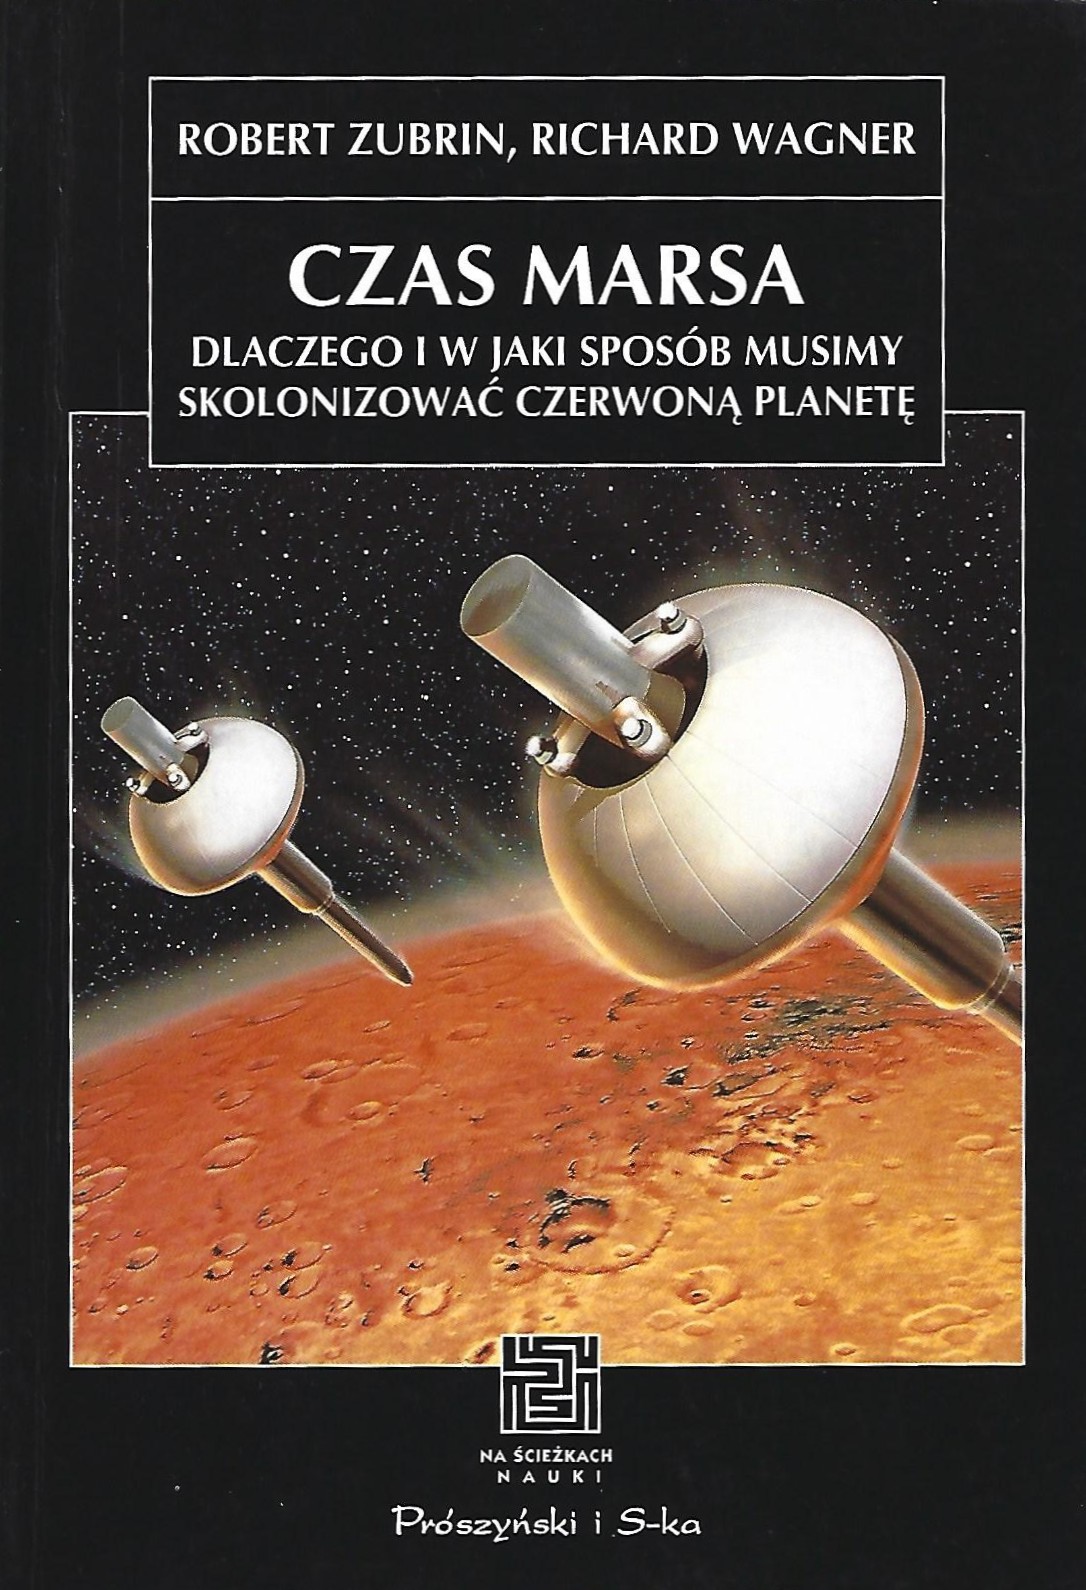 Książka pt. "Czas Marsa"